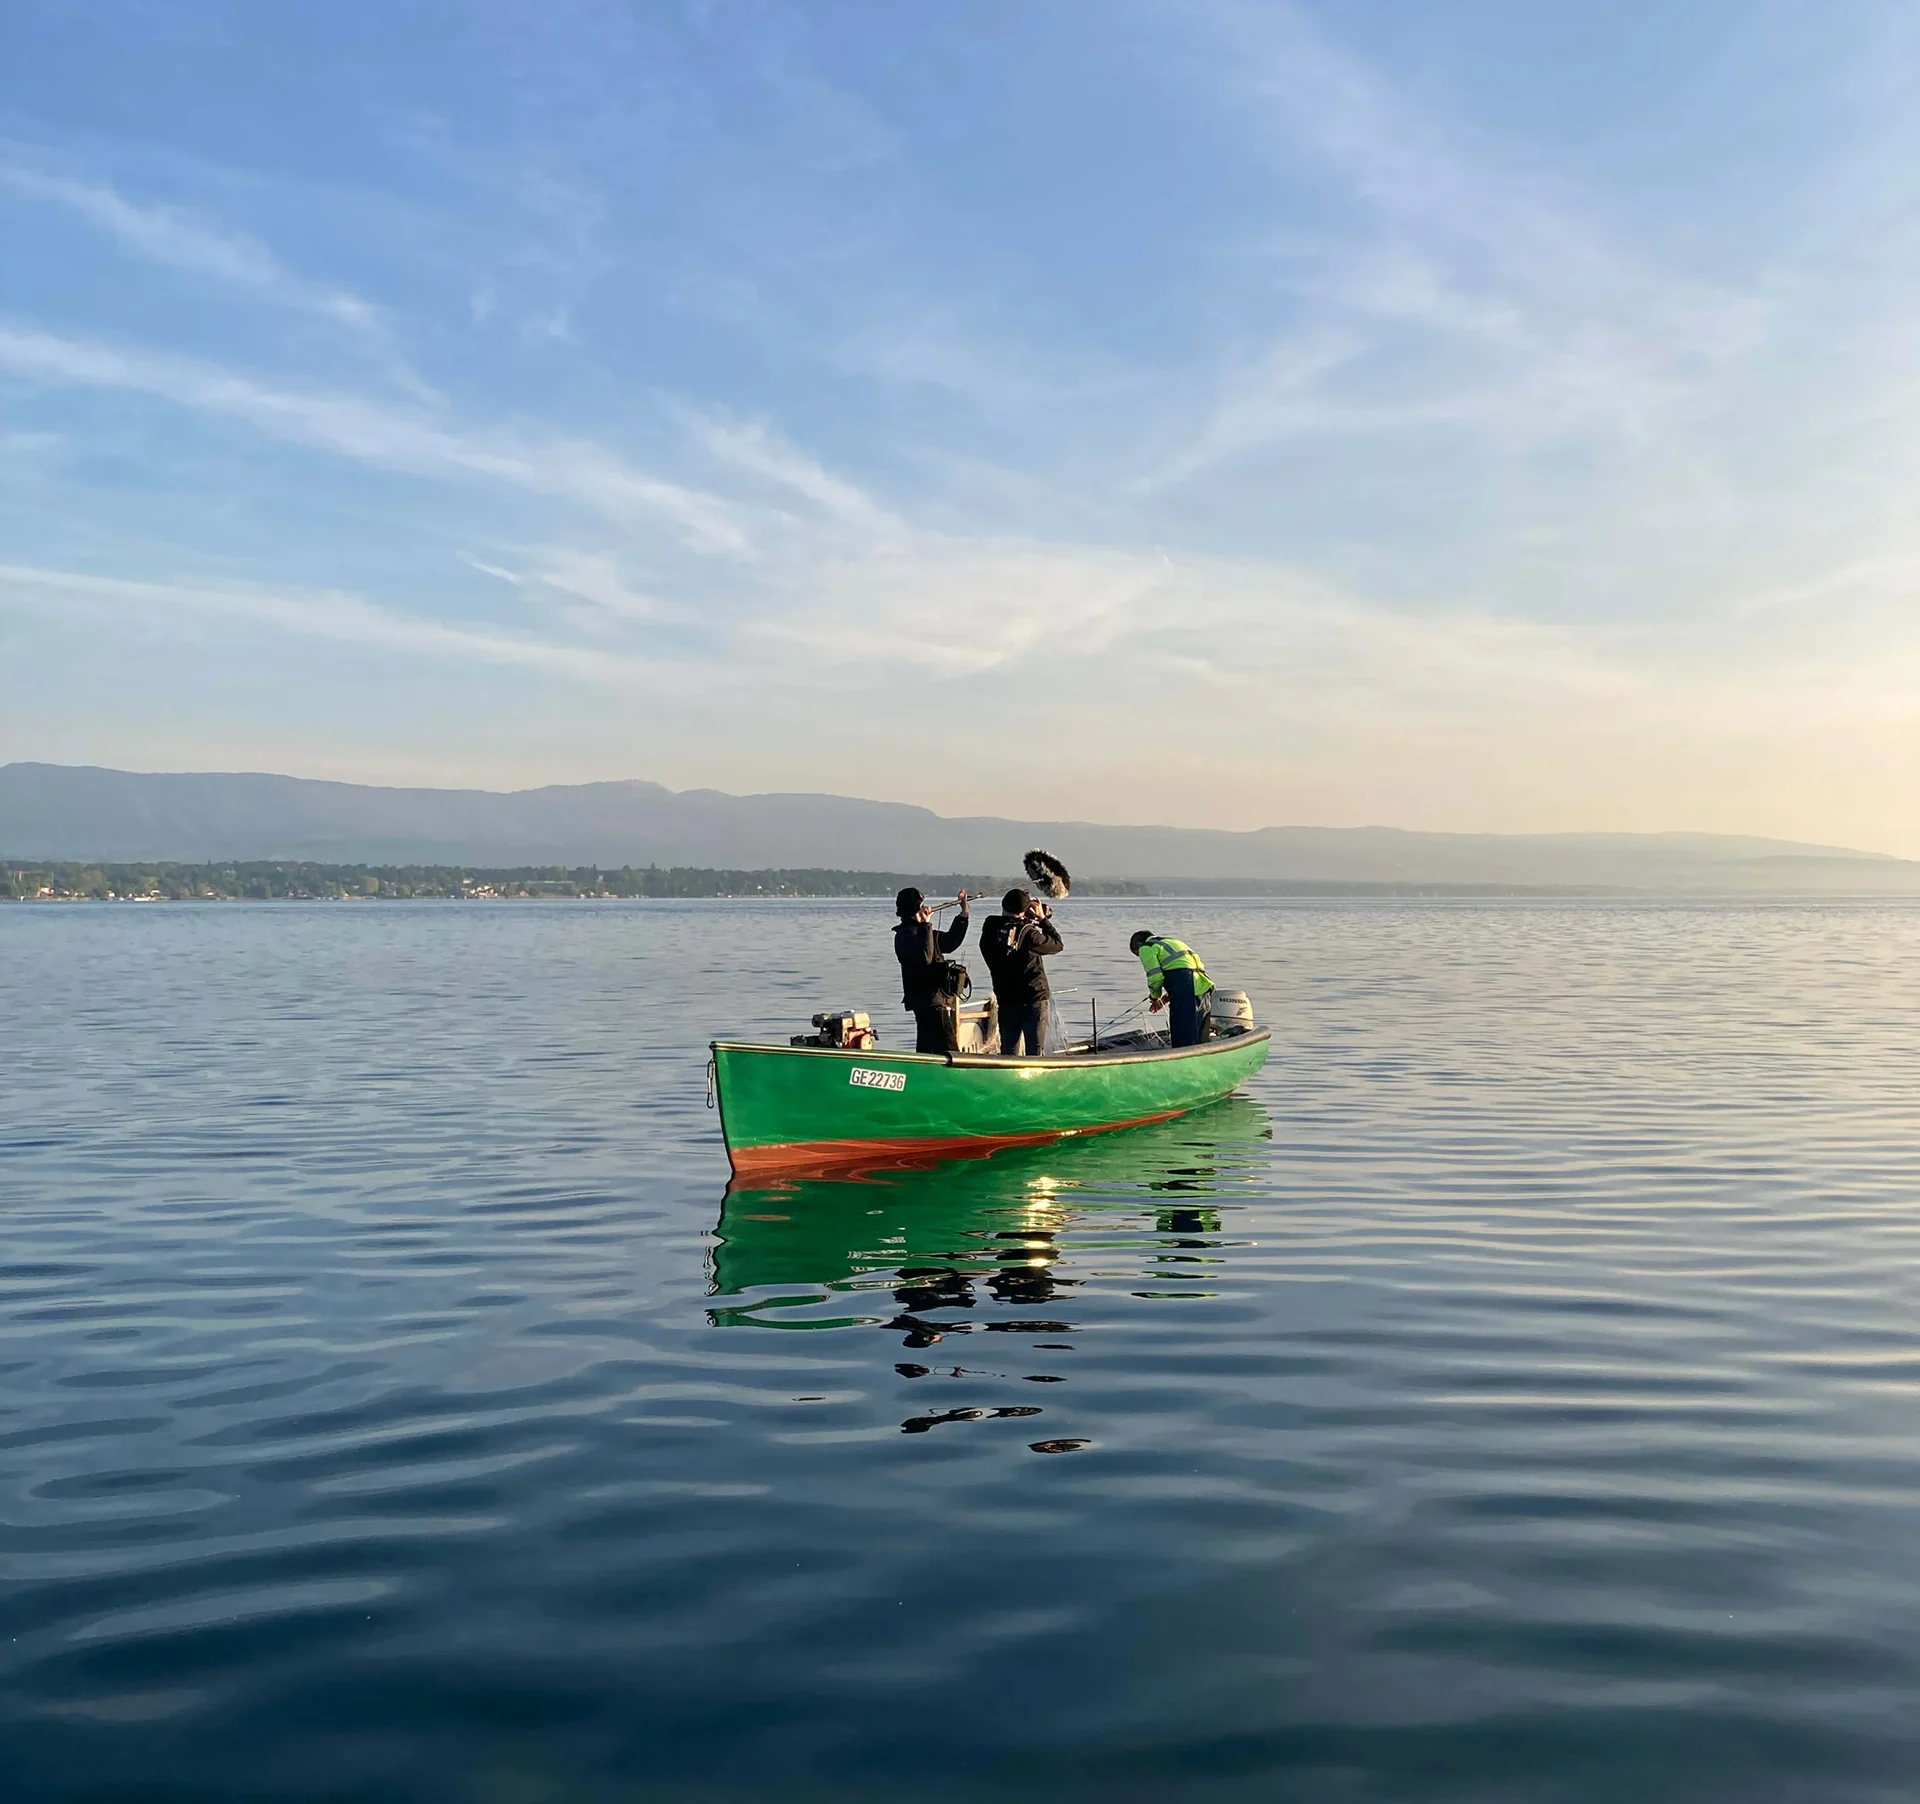 Cornland Studio - Un ingénieur du son et un caméraman filment un pécheur sur un bateau au milieu du lac de Genève